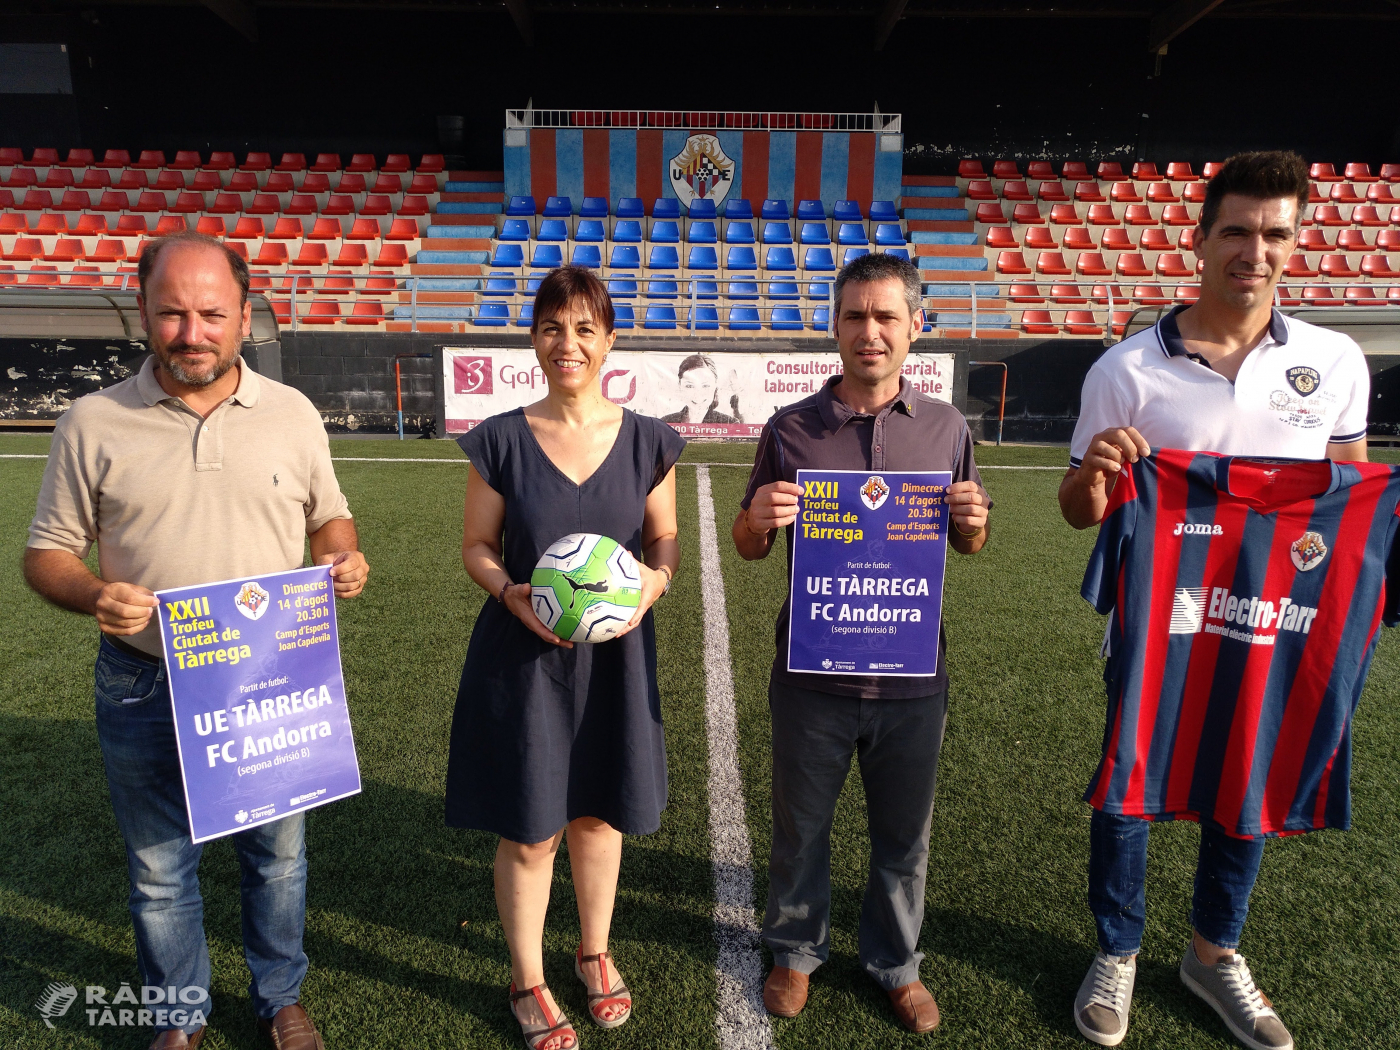 El CF Andorra, convidat de luxe al 22è Trofeu Ciutat de Tàrrega el dimecres 14 d’agost